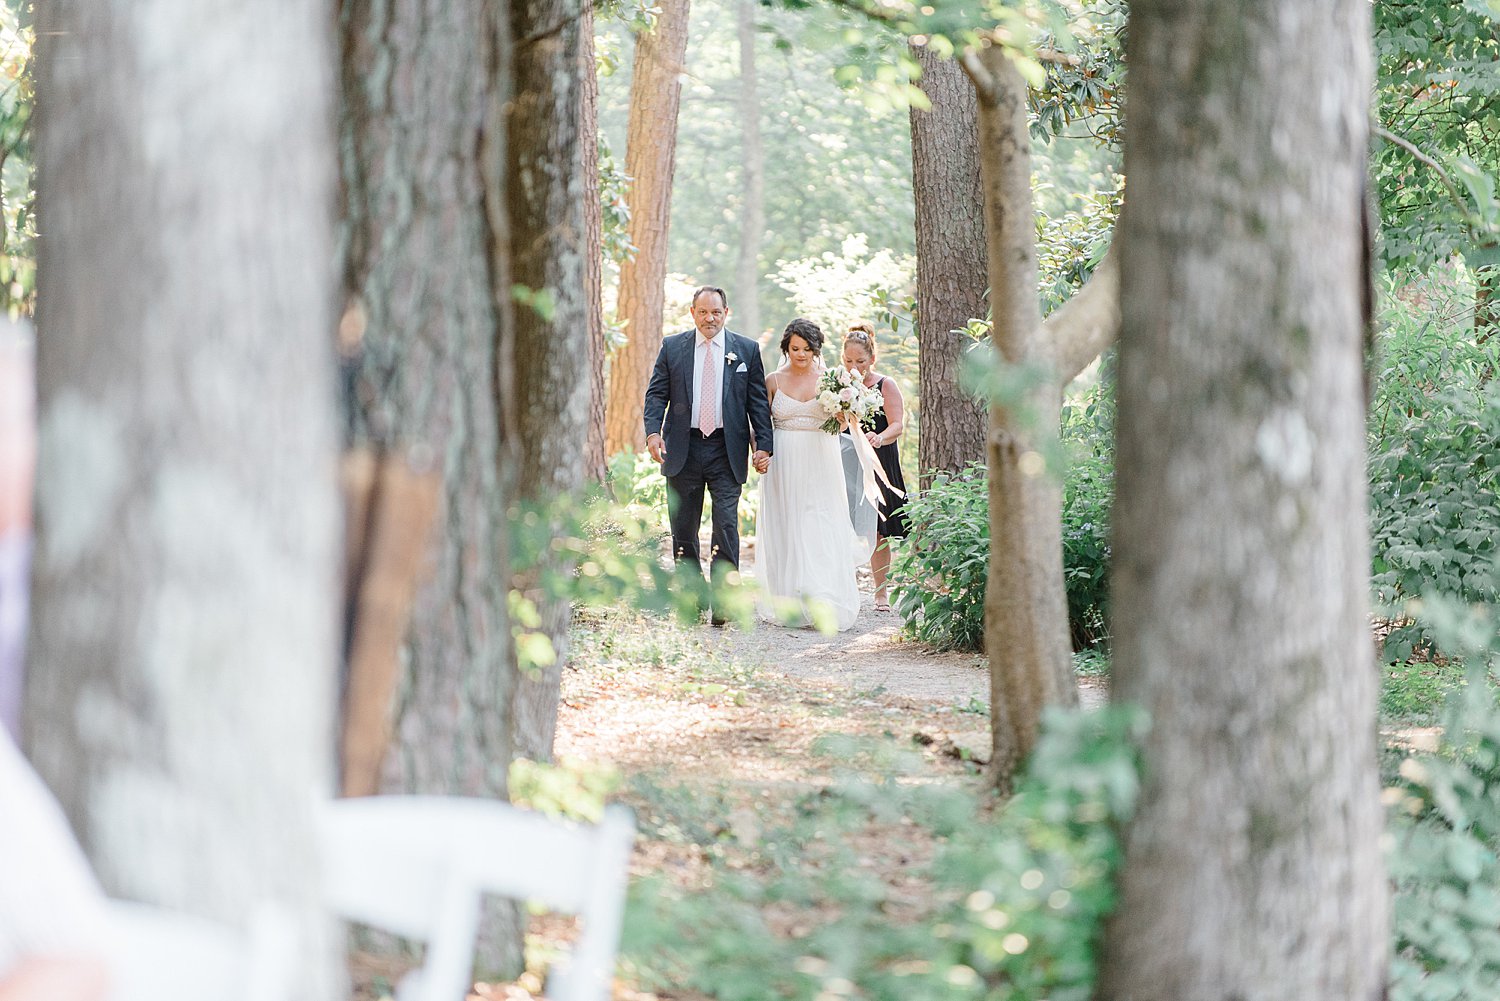 Aldridge Gardens Wedding Day Hoover Alabama | Birmingham Alabama Wedding Photographers_0031.jpg